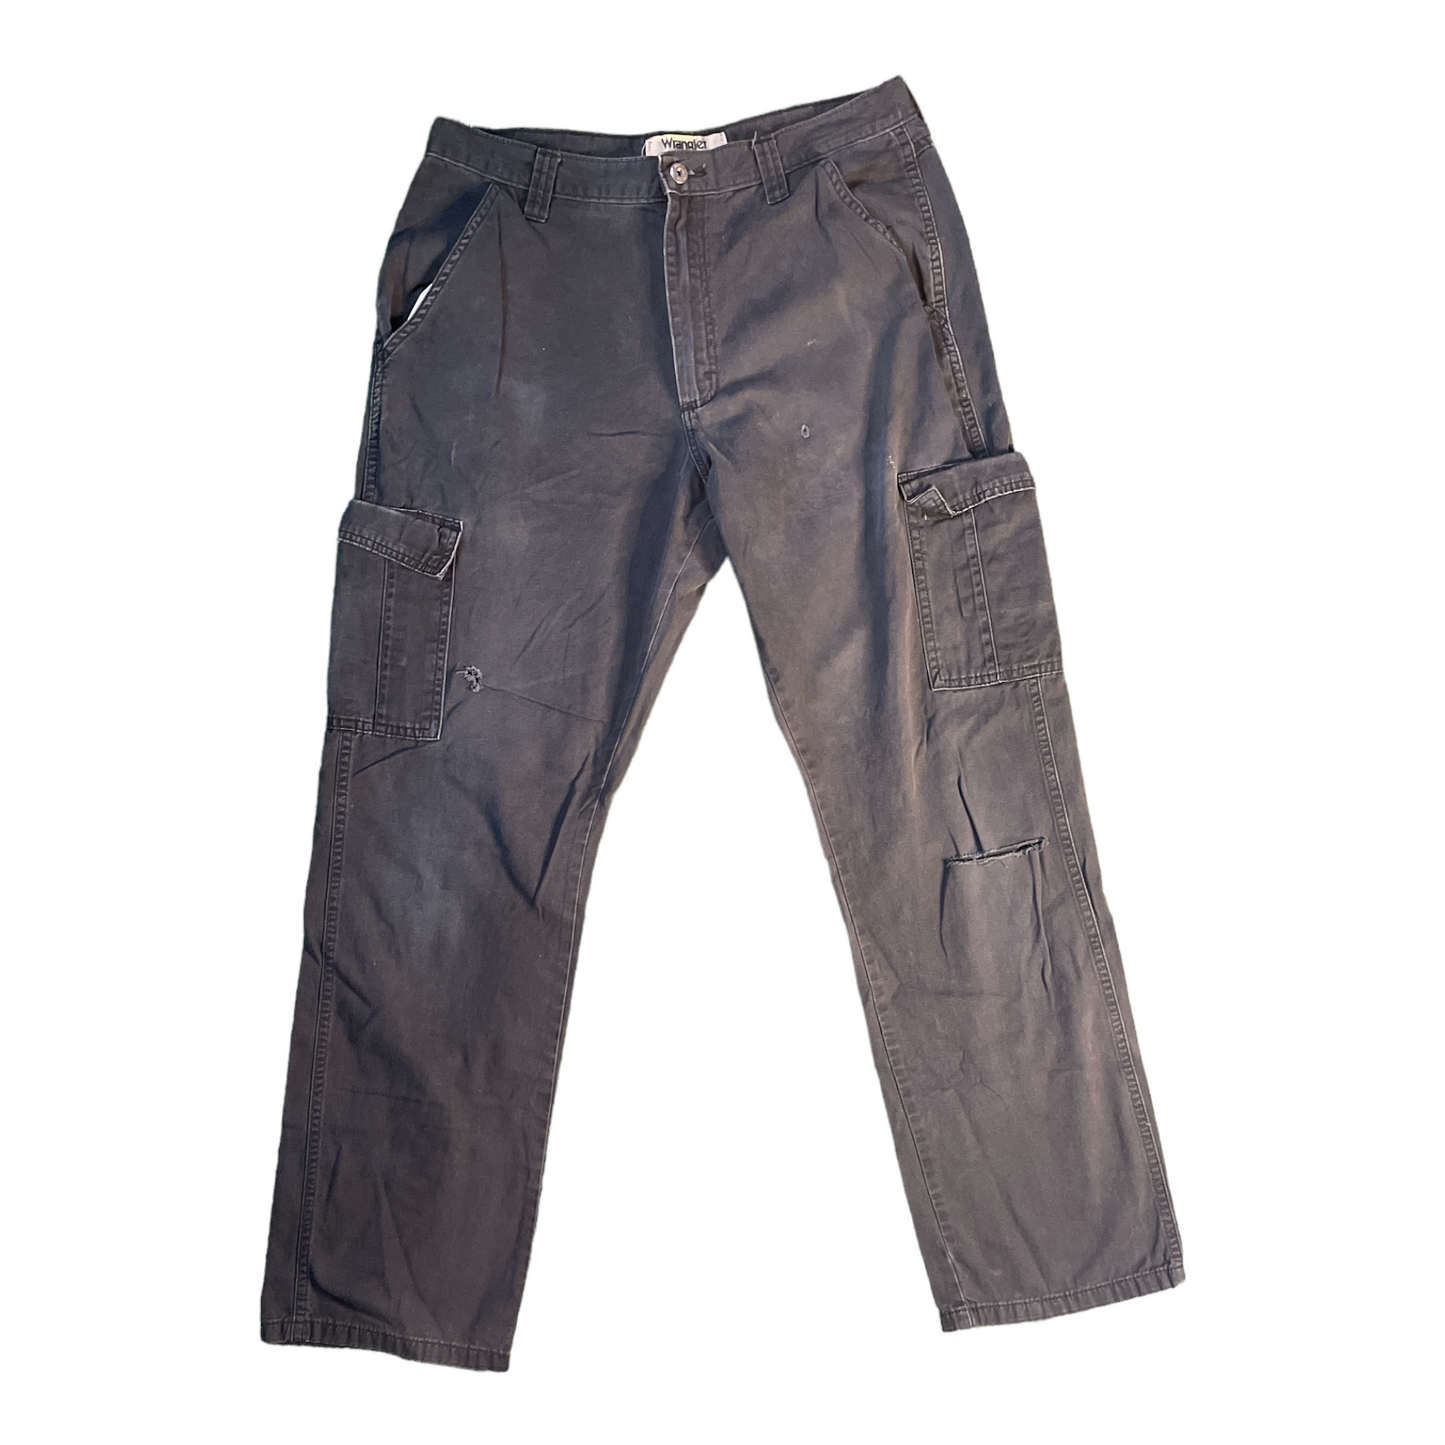 Wrangler Black Cargo Jeans W 34 L 34